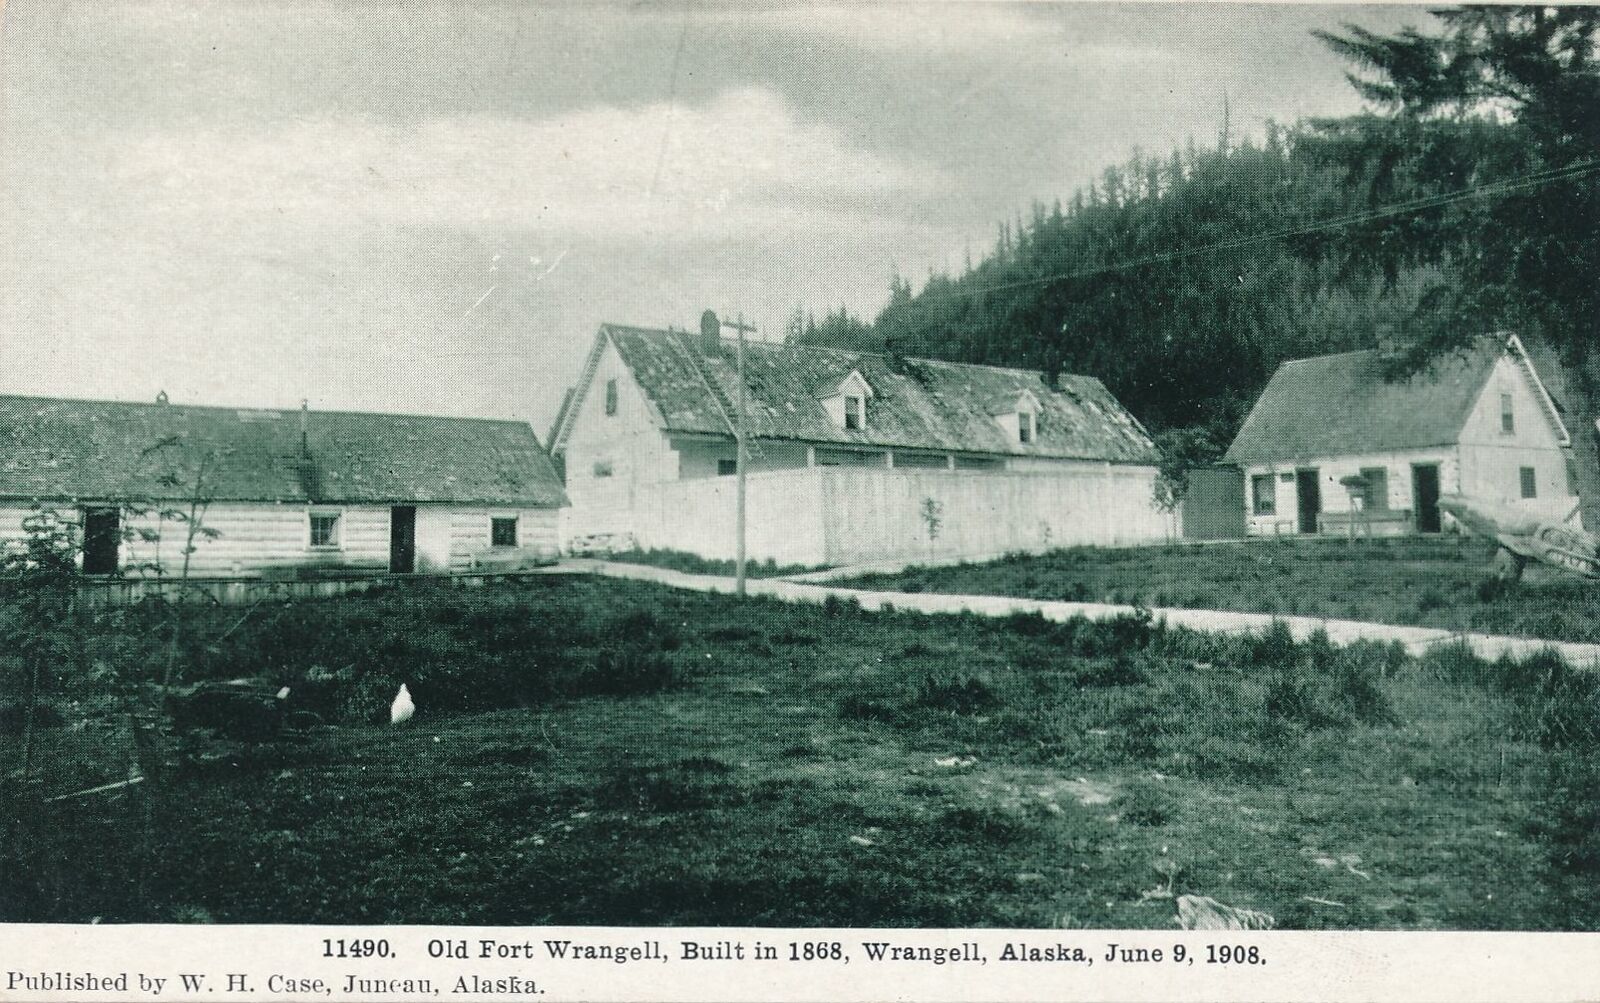 WRANGELL AK - Old Fort Wrangell (Built in 1868) June 9, 1908